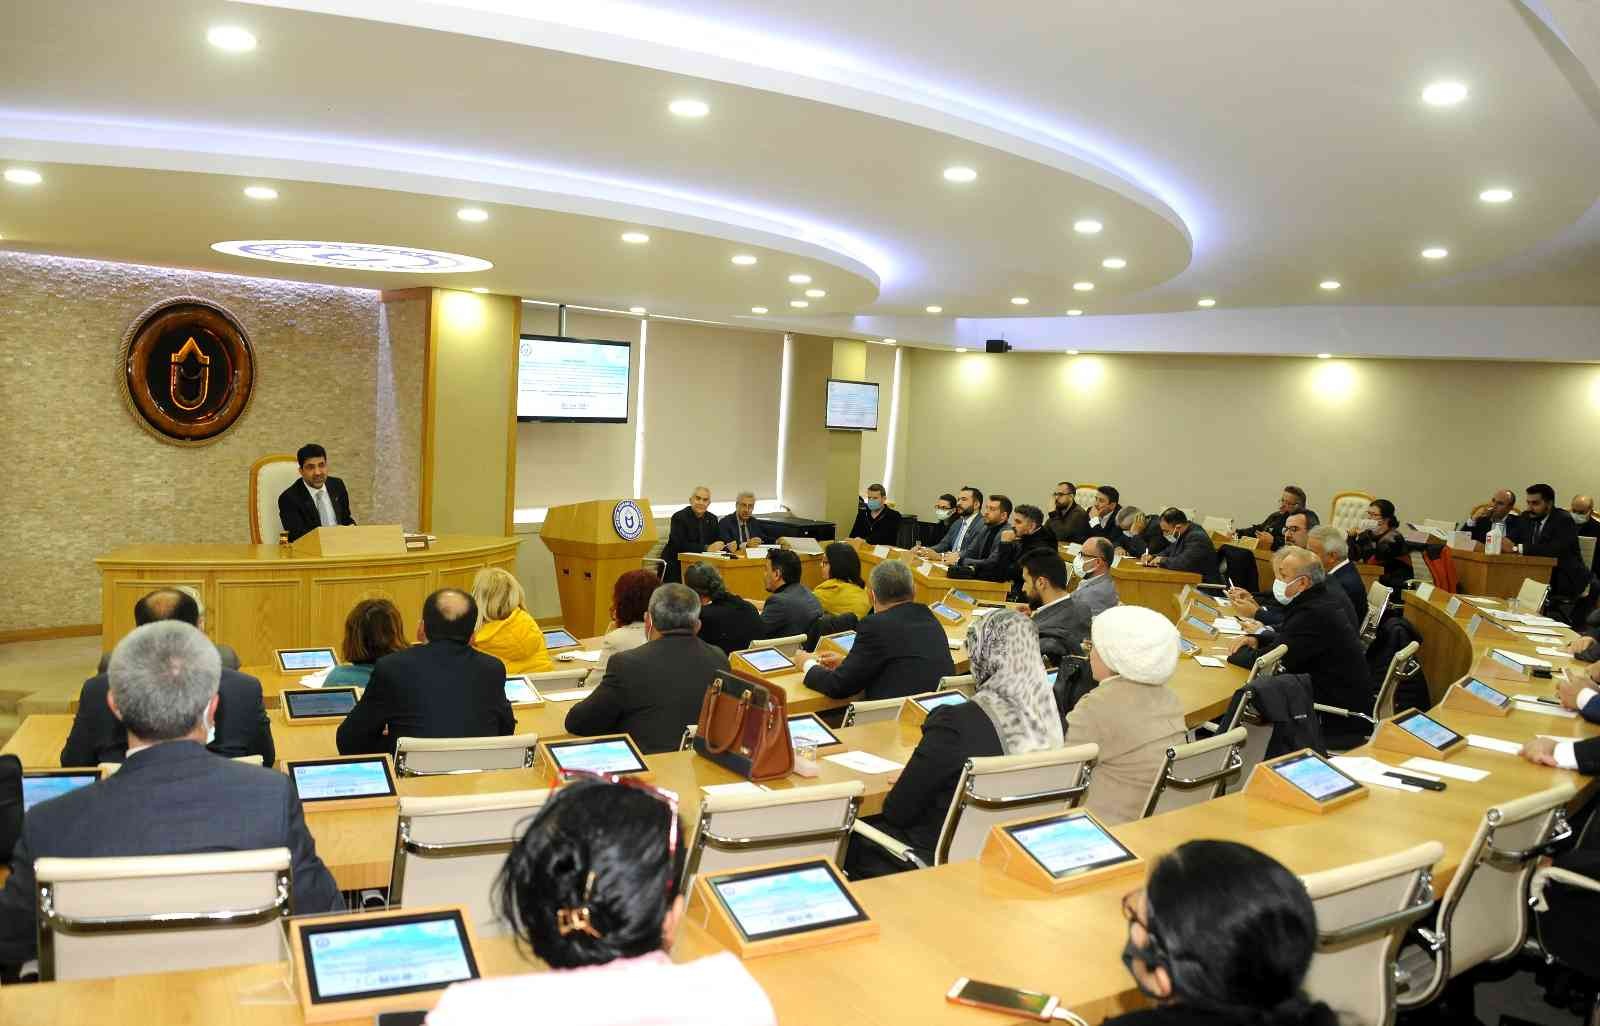 ADÜ’de Sivil Senatonun resmi ilk toplantısı yapıldı #aydin